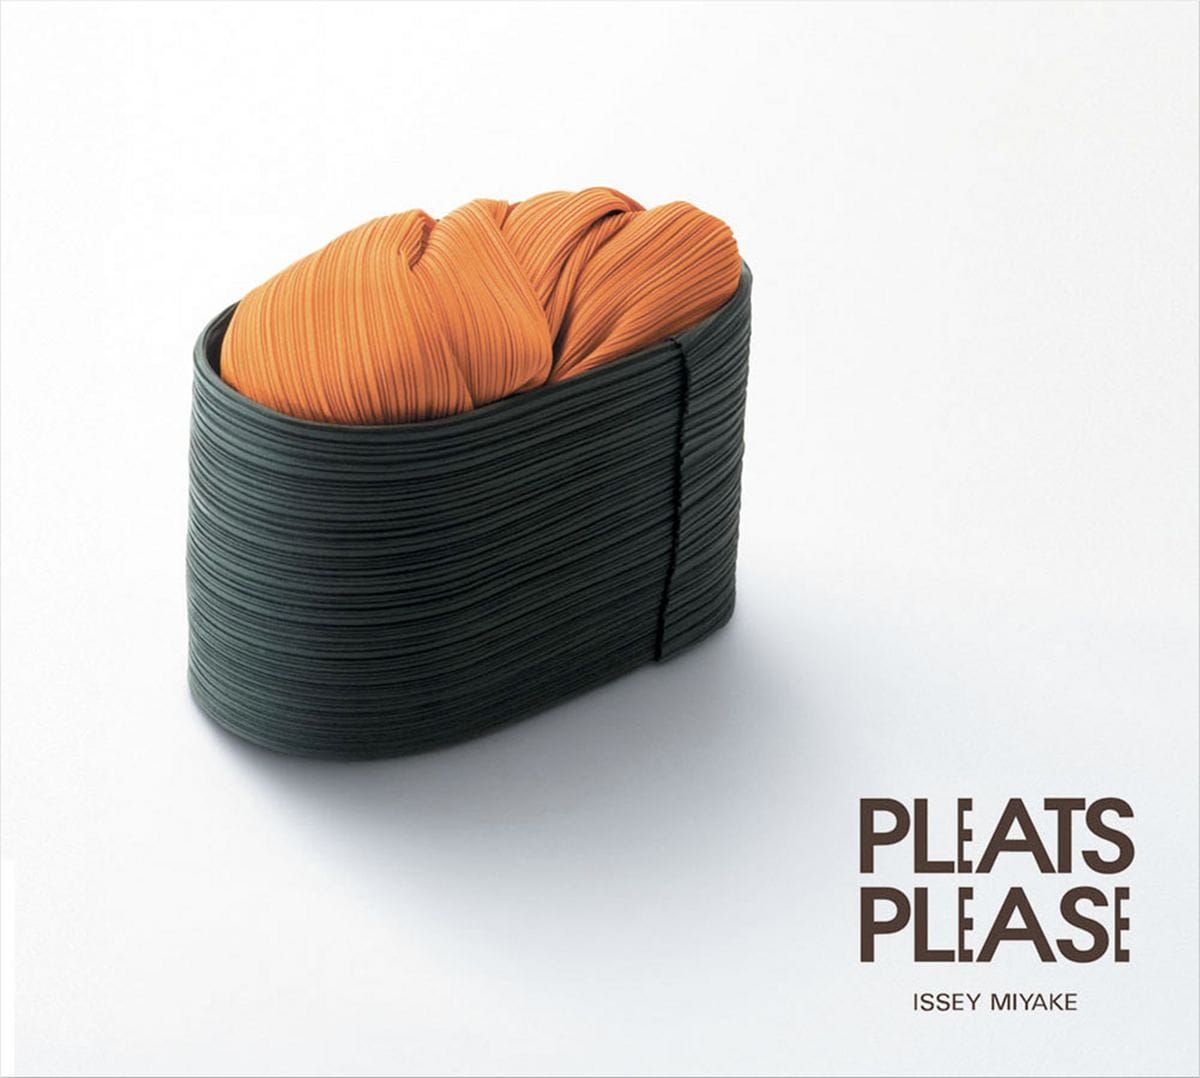 Pleats Please: Pastel colors|adRuby.com